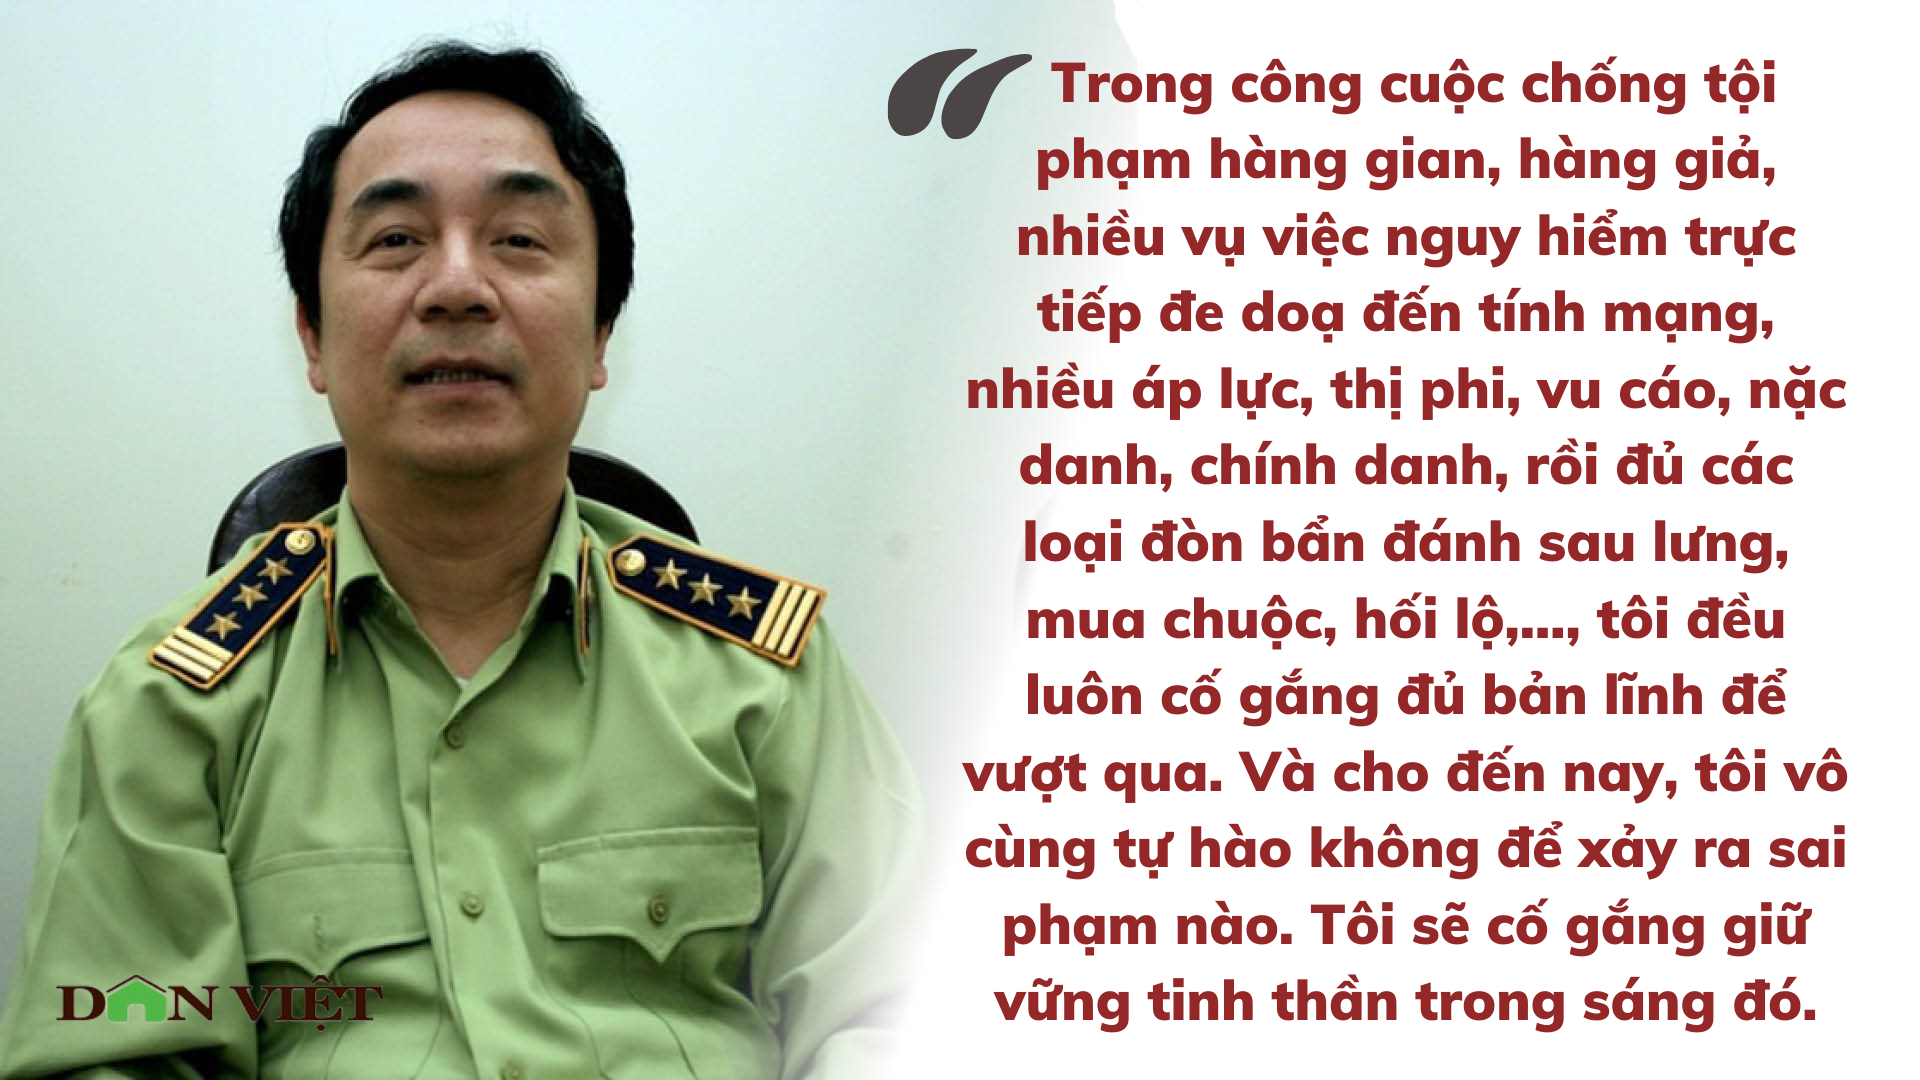 Những phát ngôn đáng chú ý của Cựu Cục phó Quản lý thị trường Trần Hùng trước khi bị bắt - Ảnh 4.